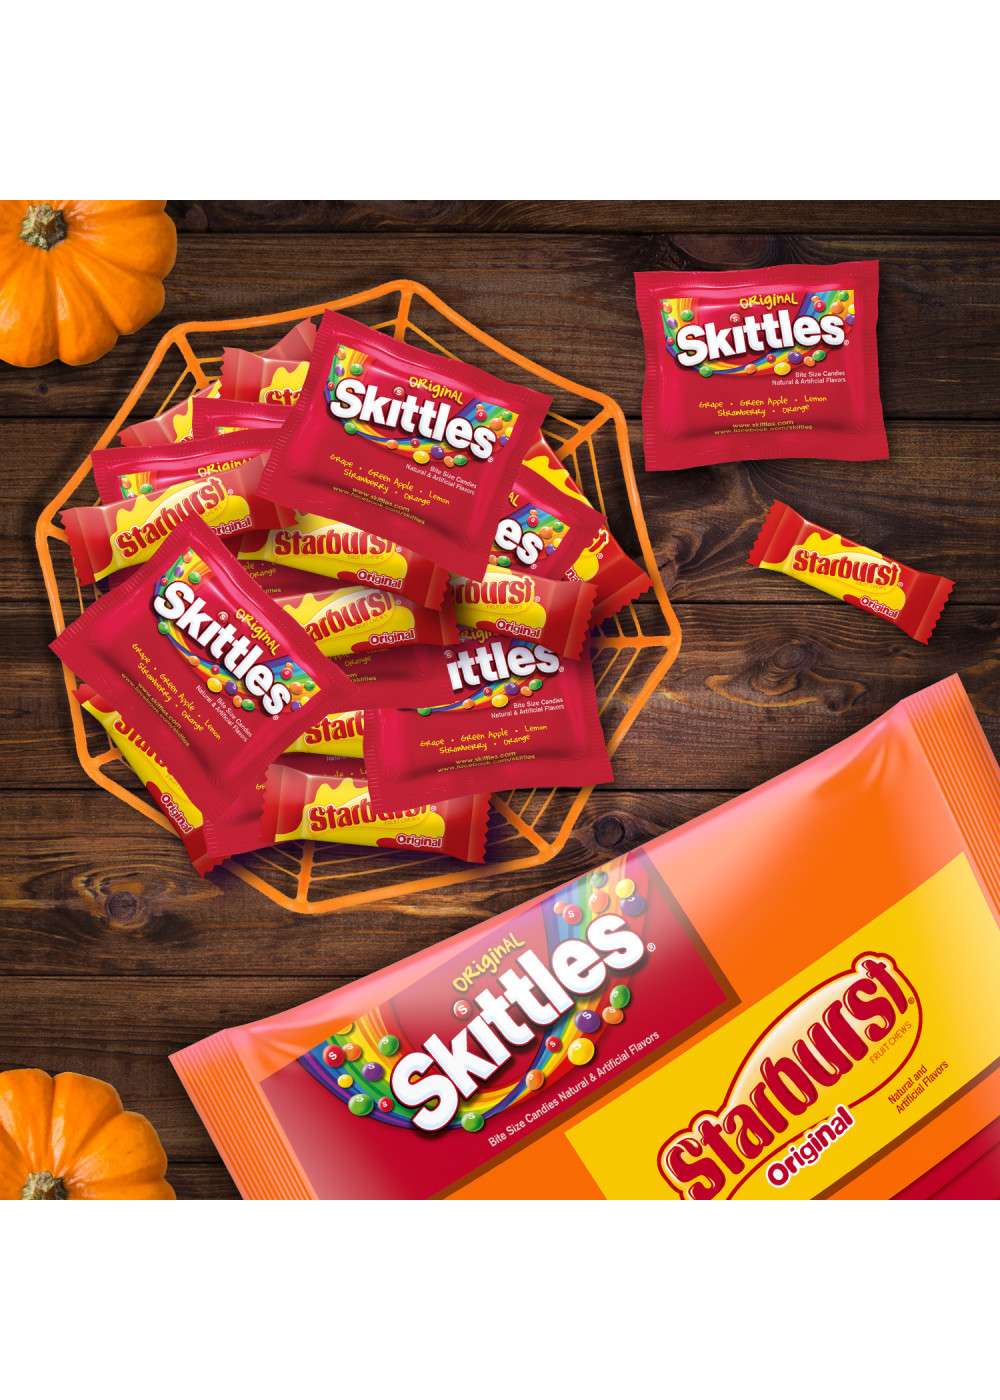 Skittles & Starburst Fun Size Candy Packs; image 7 of 9